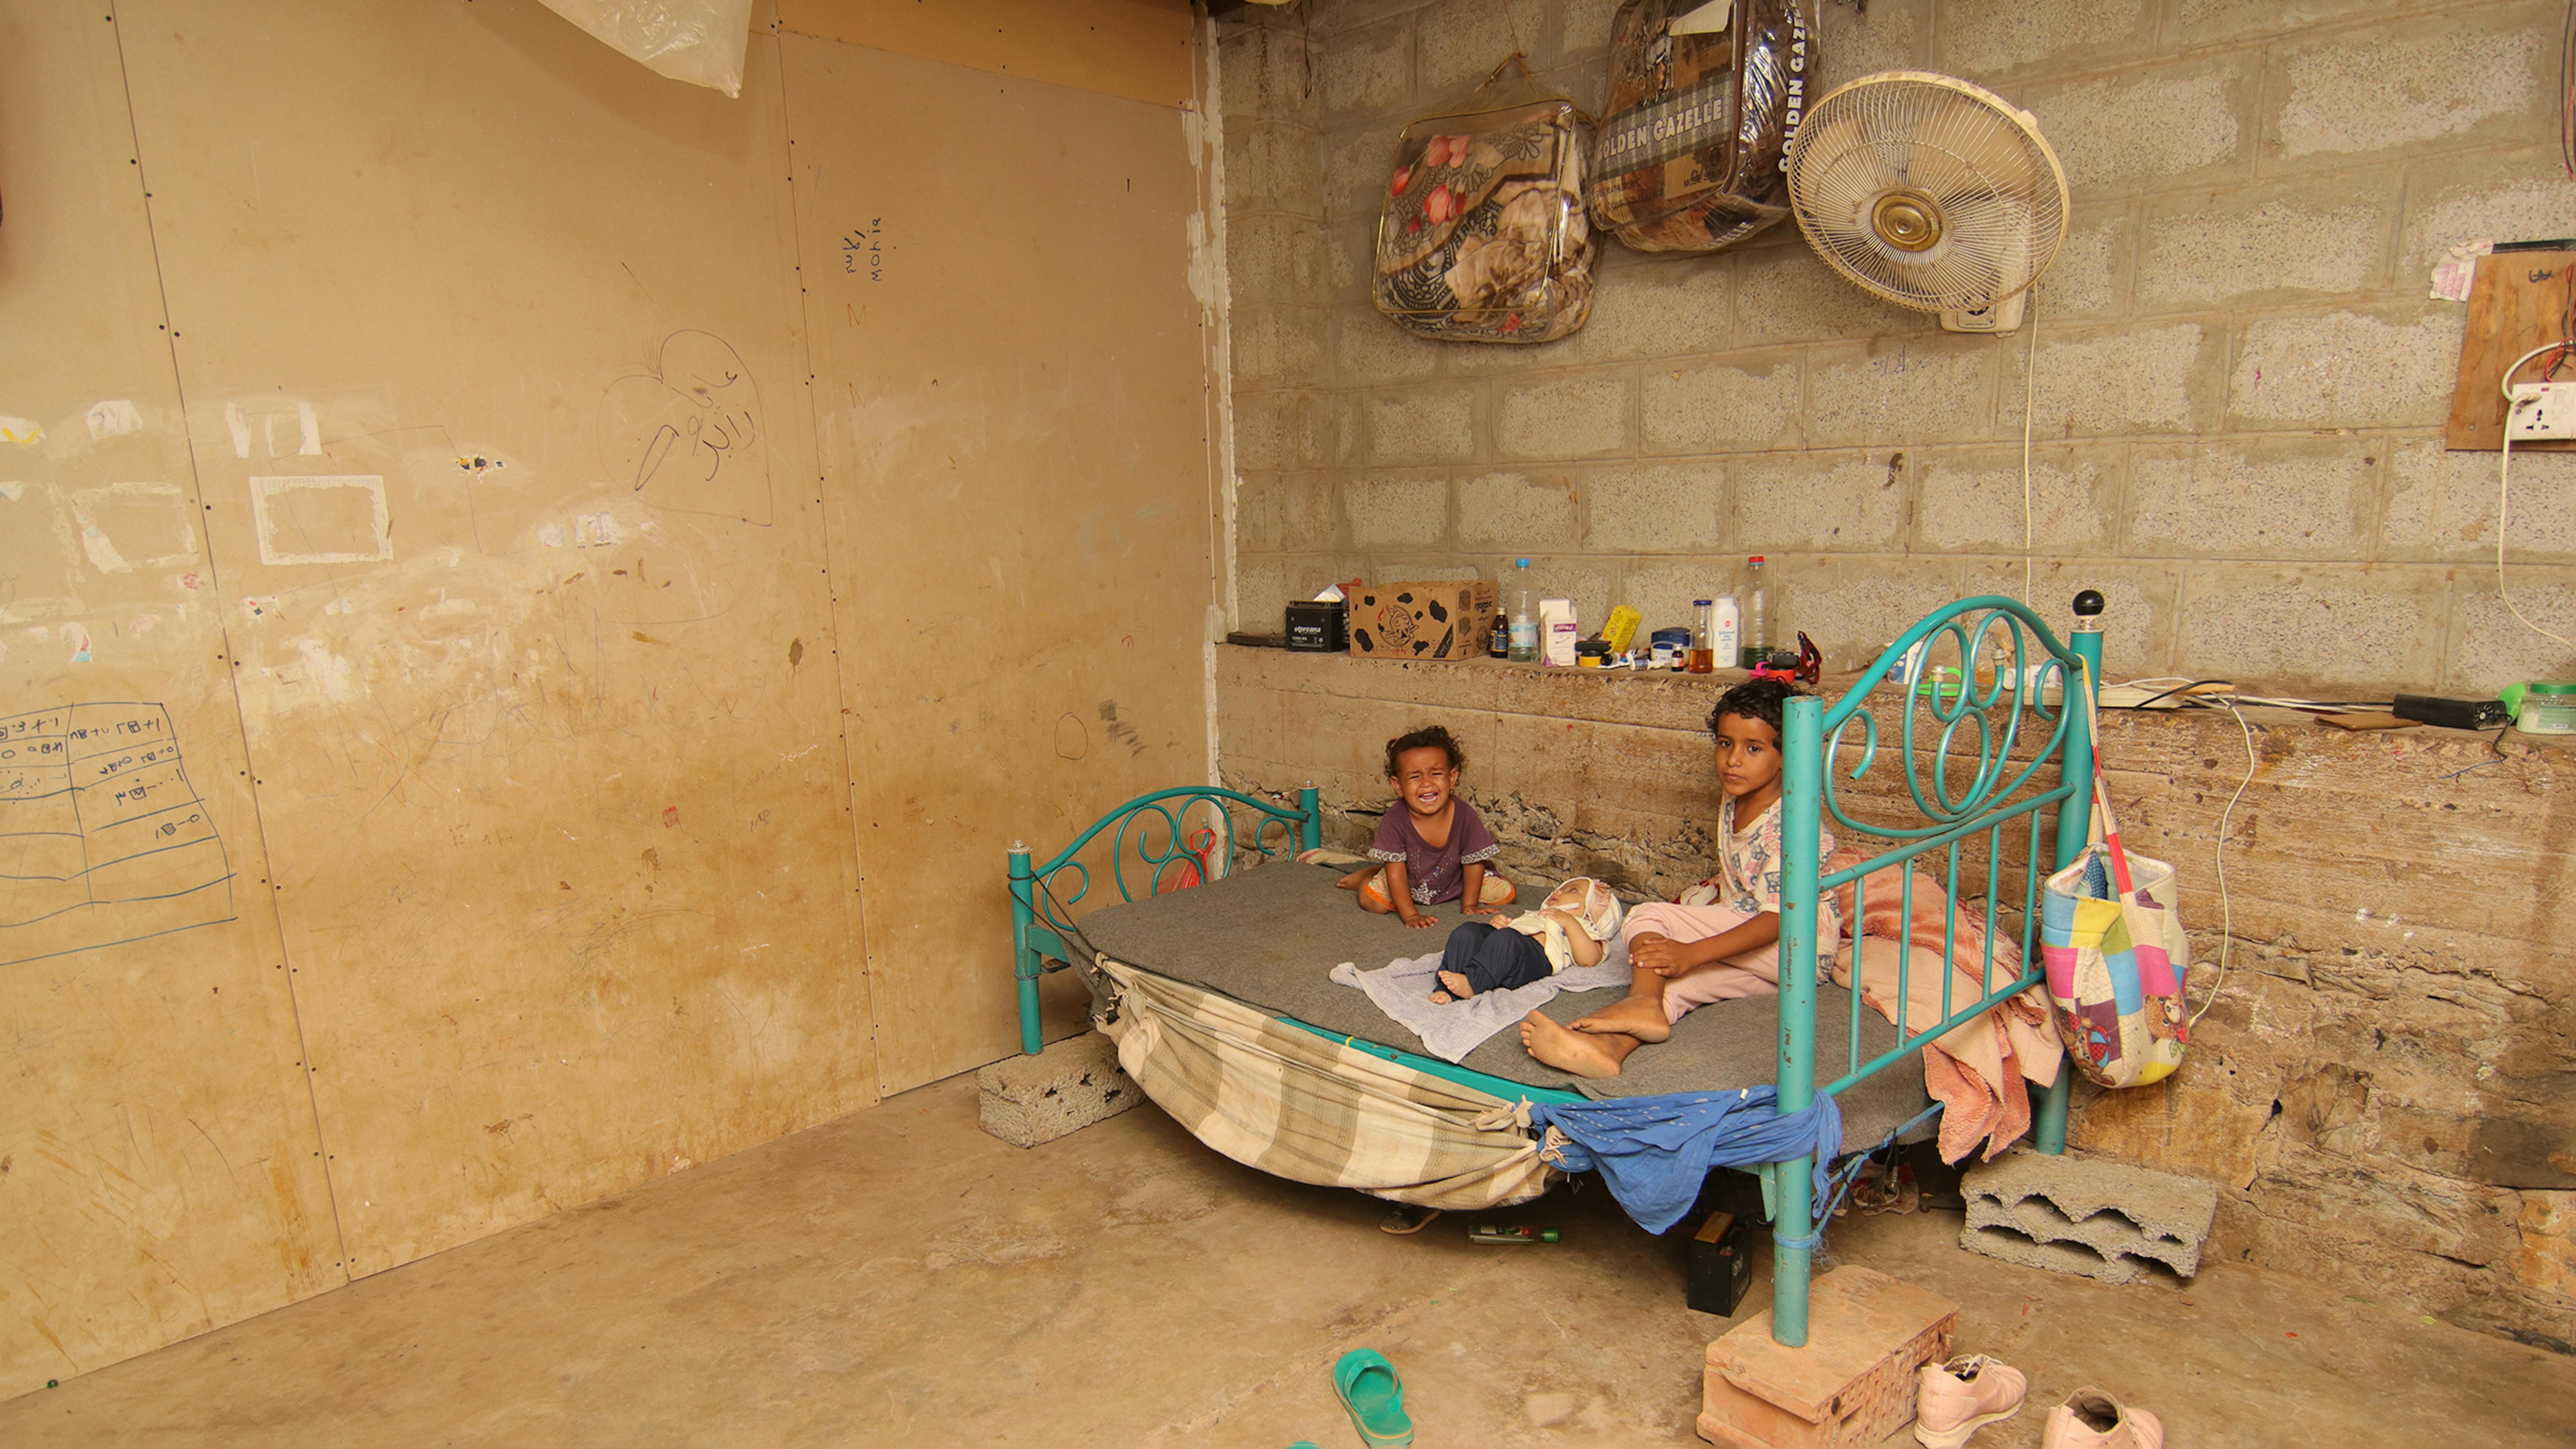 2019, Yemen. Muna con i suoi due fratelli dormono su un unico letto, nel rifugio informale in cui si trovano con tutta la famiglia. 